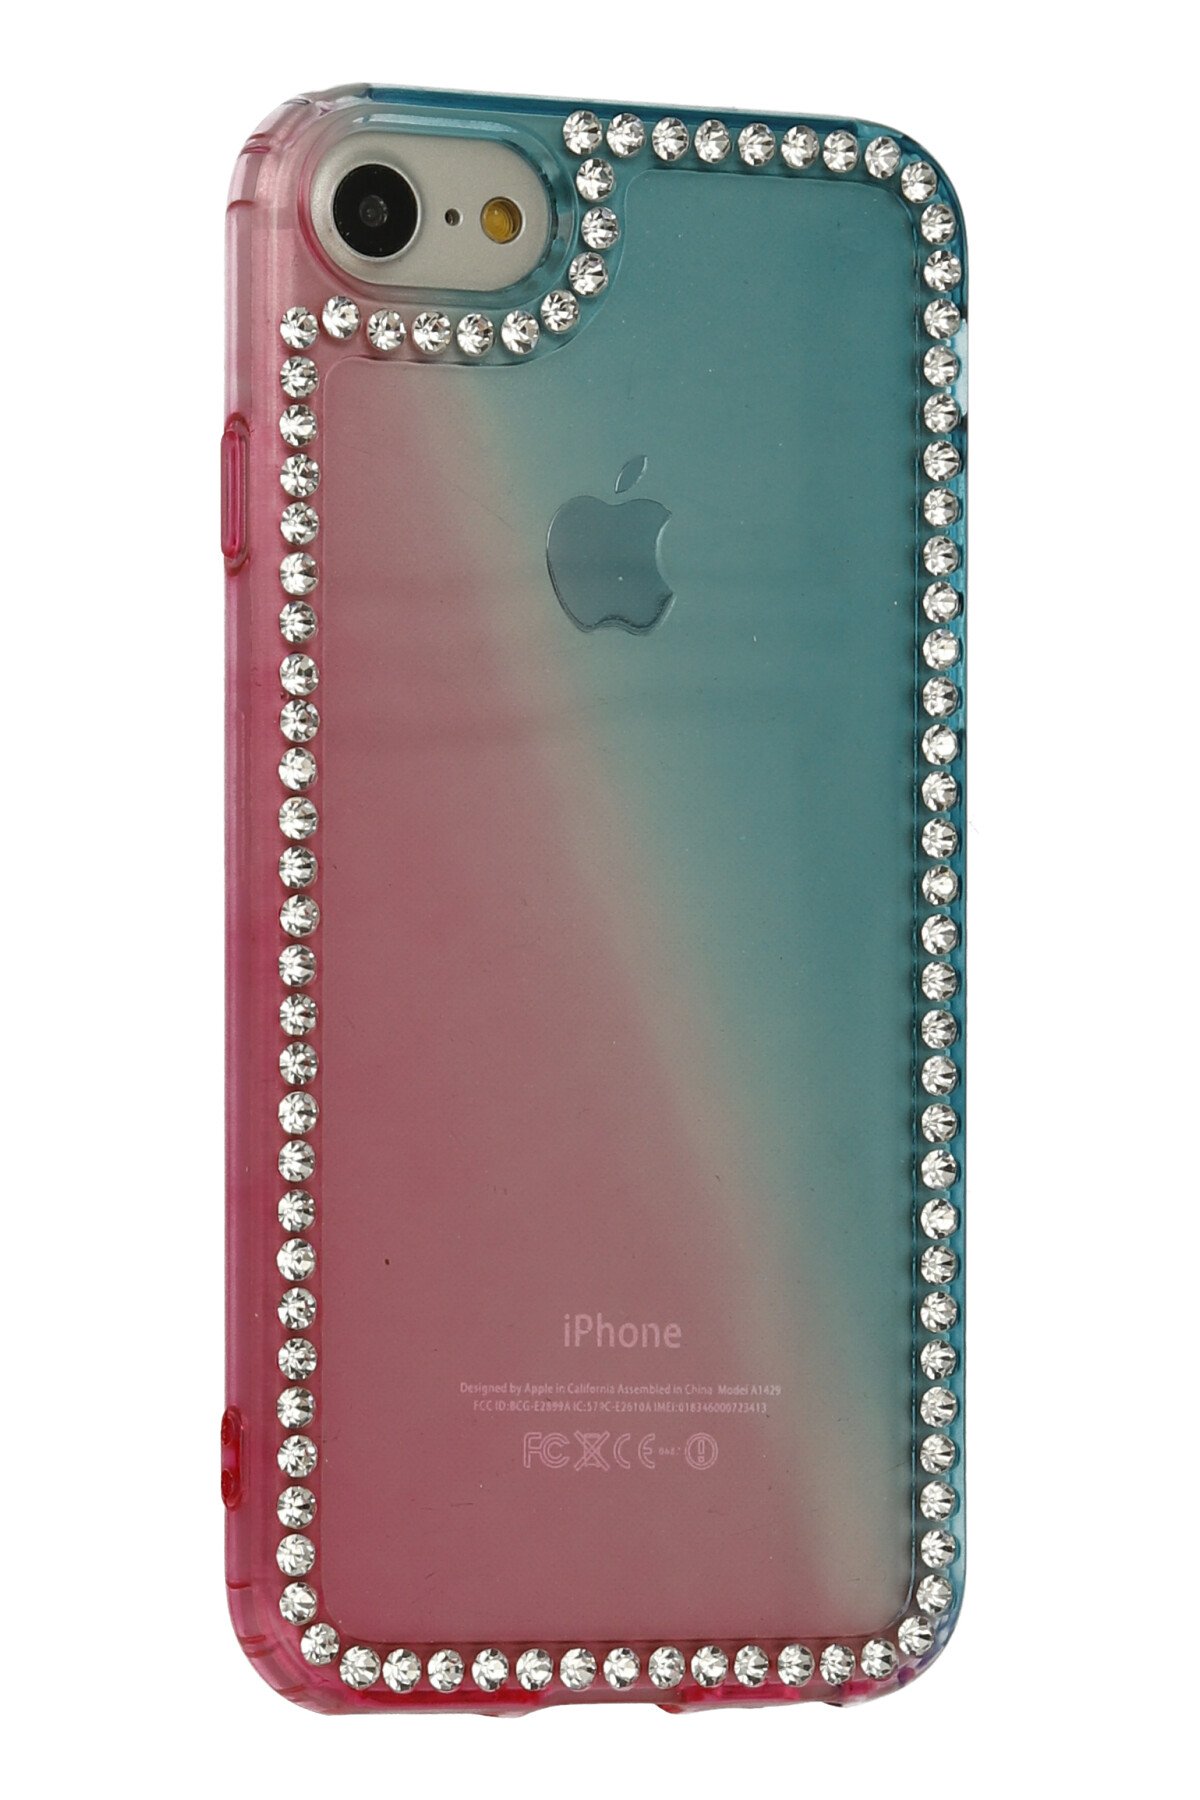 Newface iPhone 8 Kılıf Montreal Yüzüklü Silikon Kapak - Kırmızı